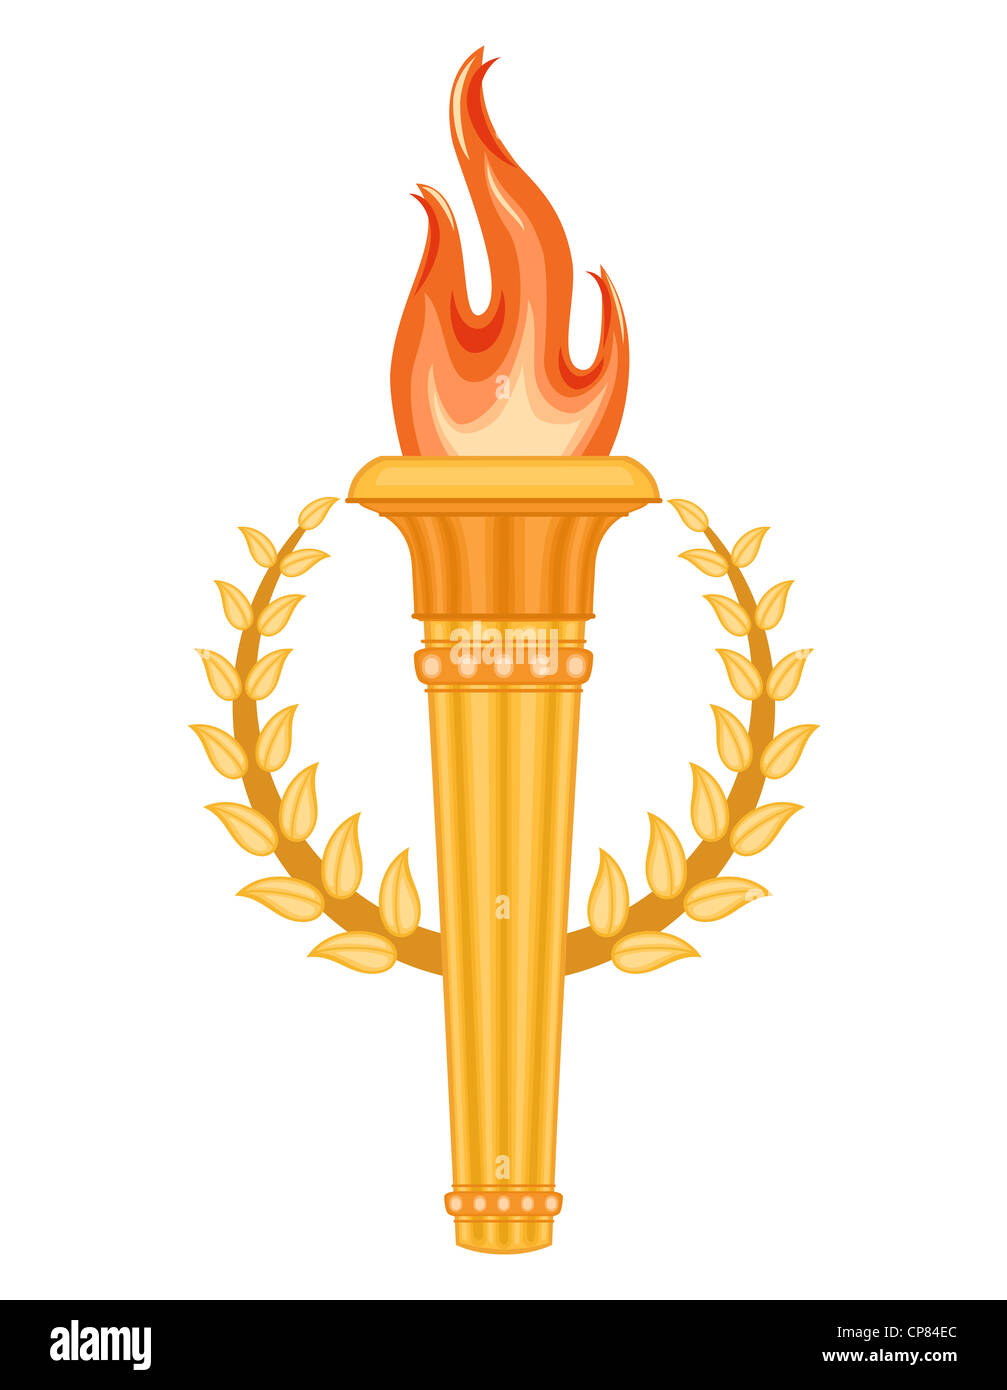 Griechische Olympische Fackel mit Goldener Krone von Lorbeeren. Olympischen Spiele Spiele Symbol. Stockfoto